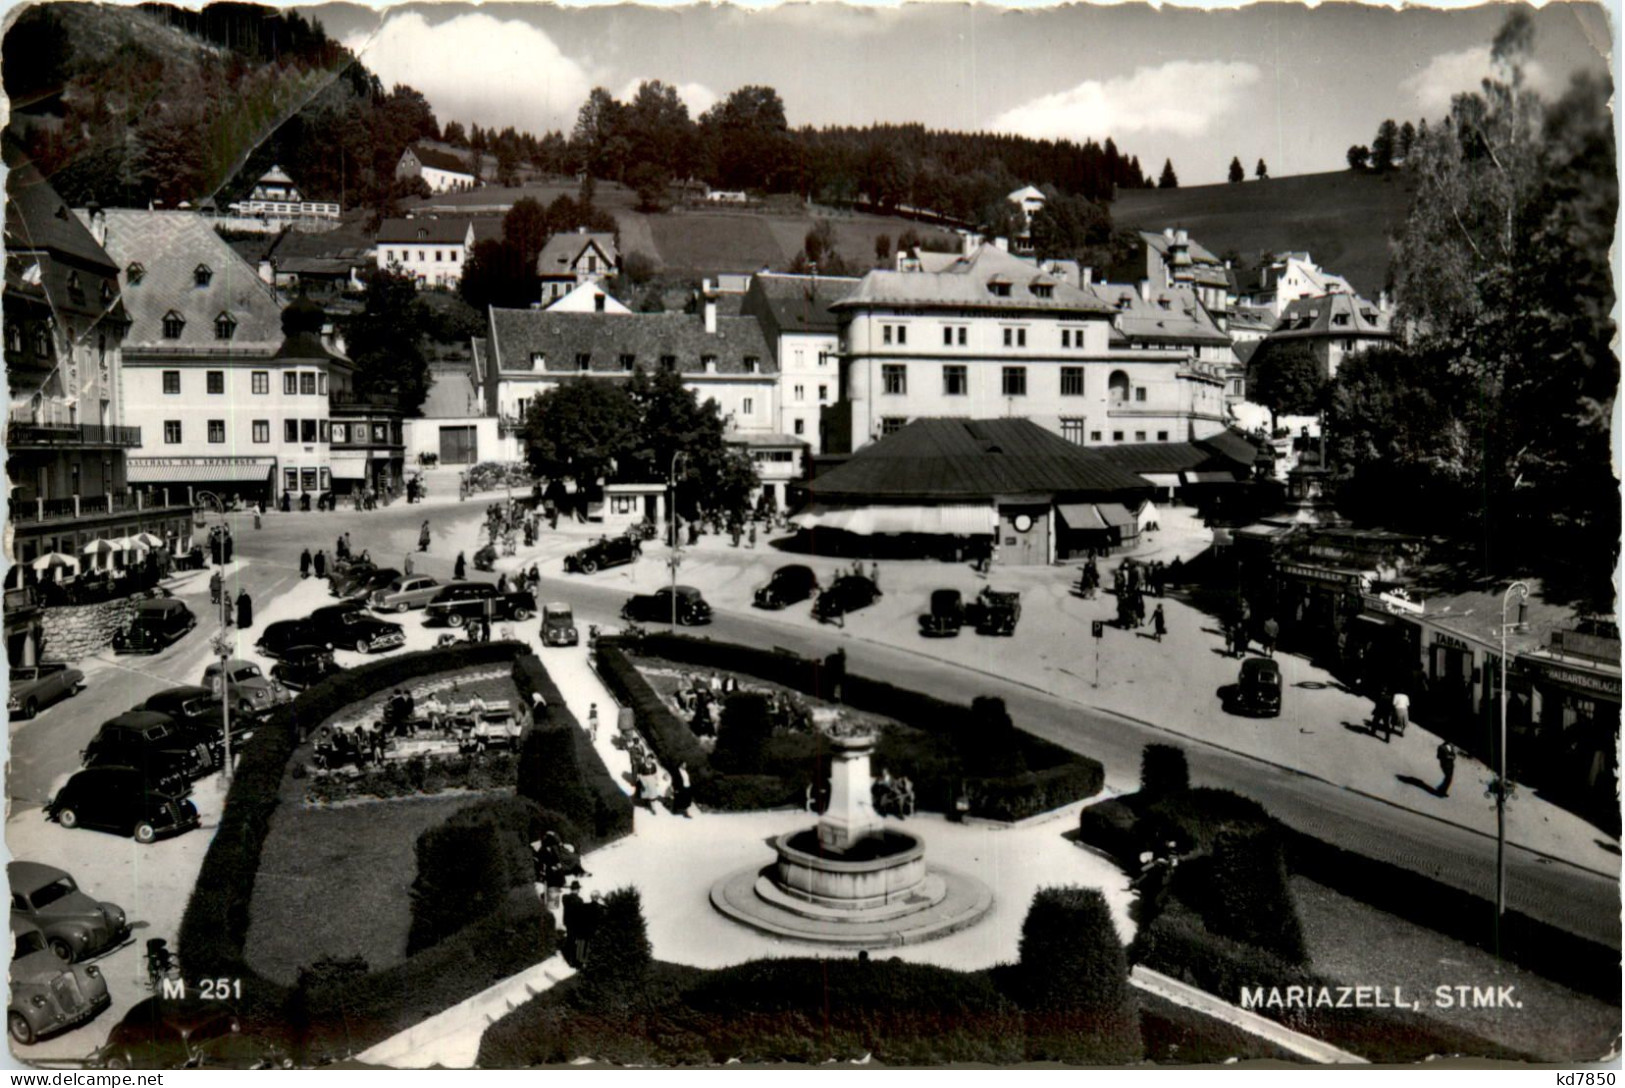 Mariazell, - Mariazell